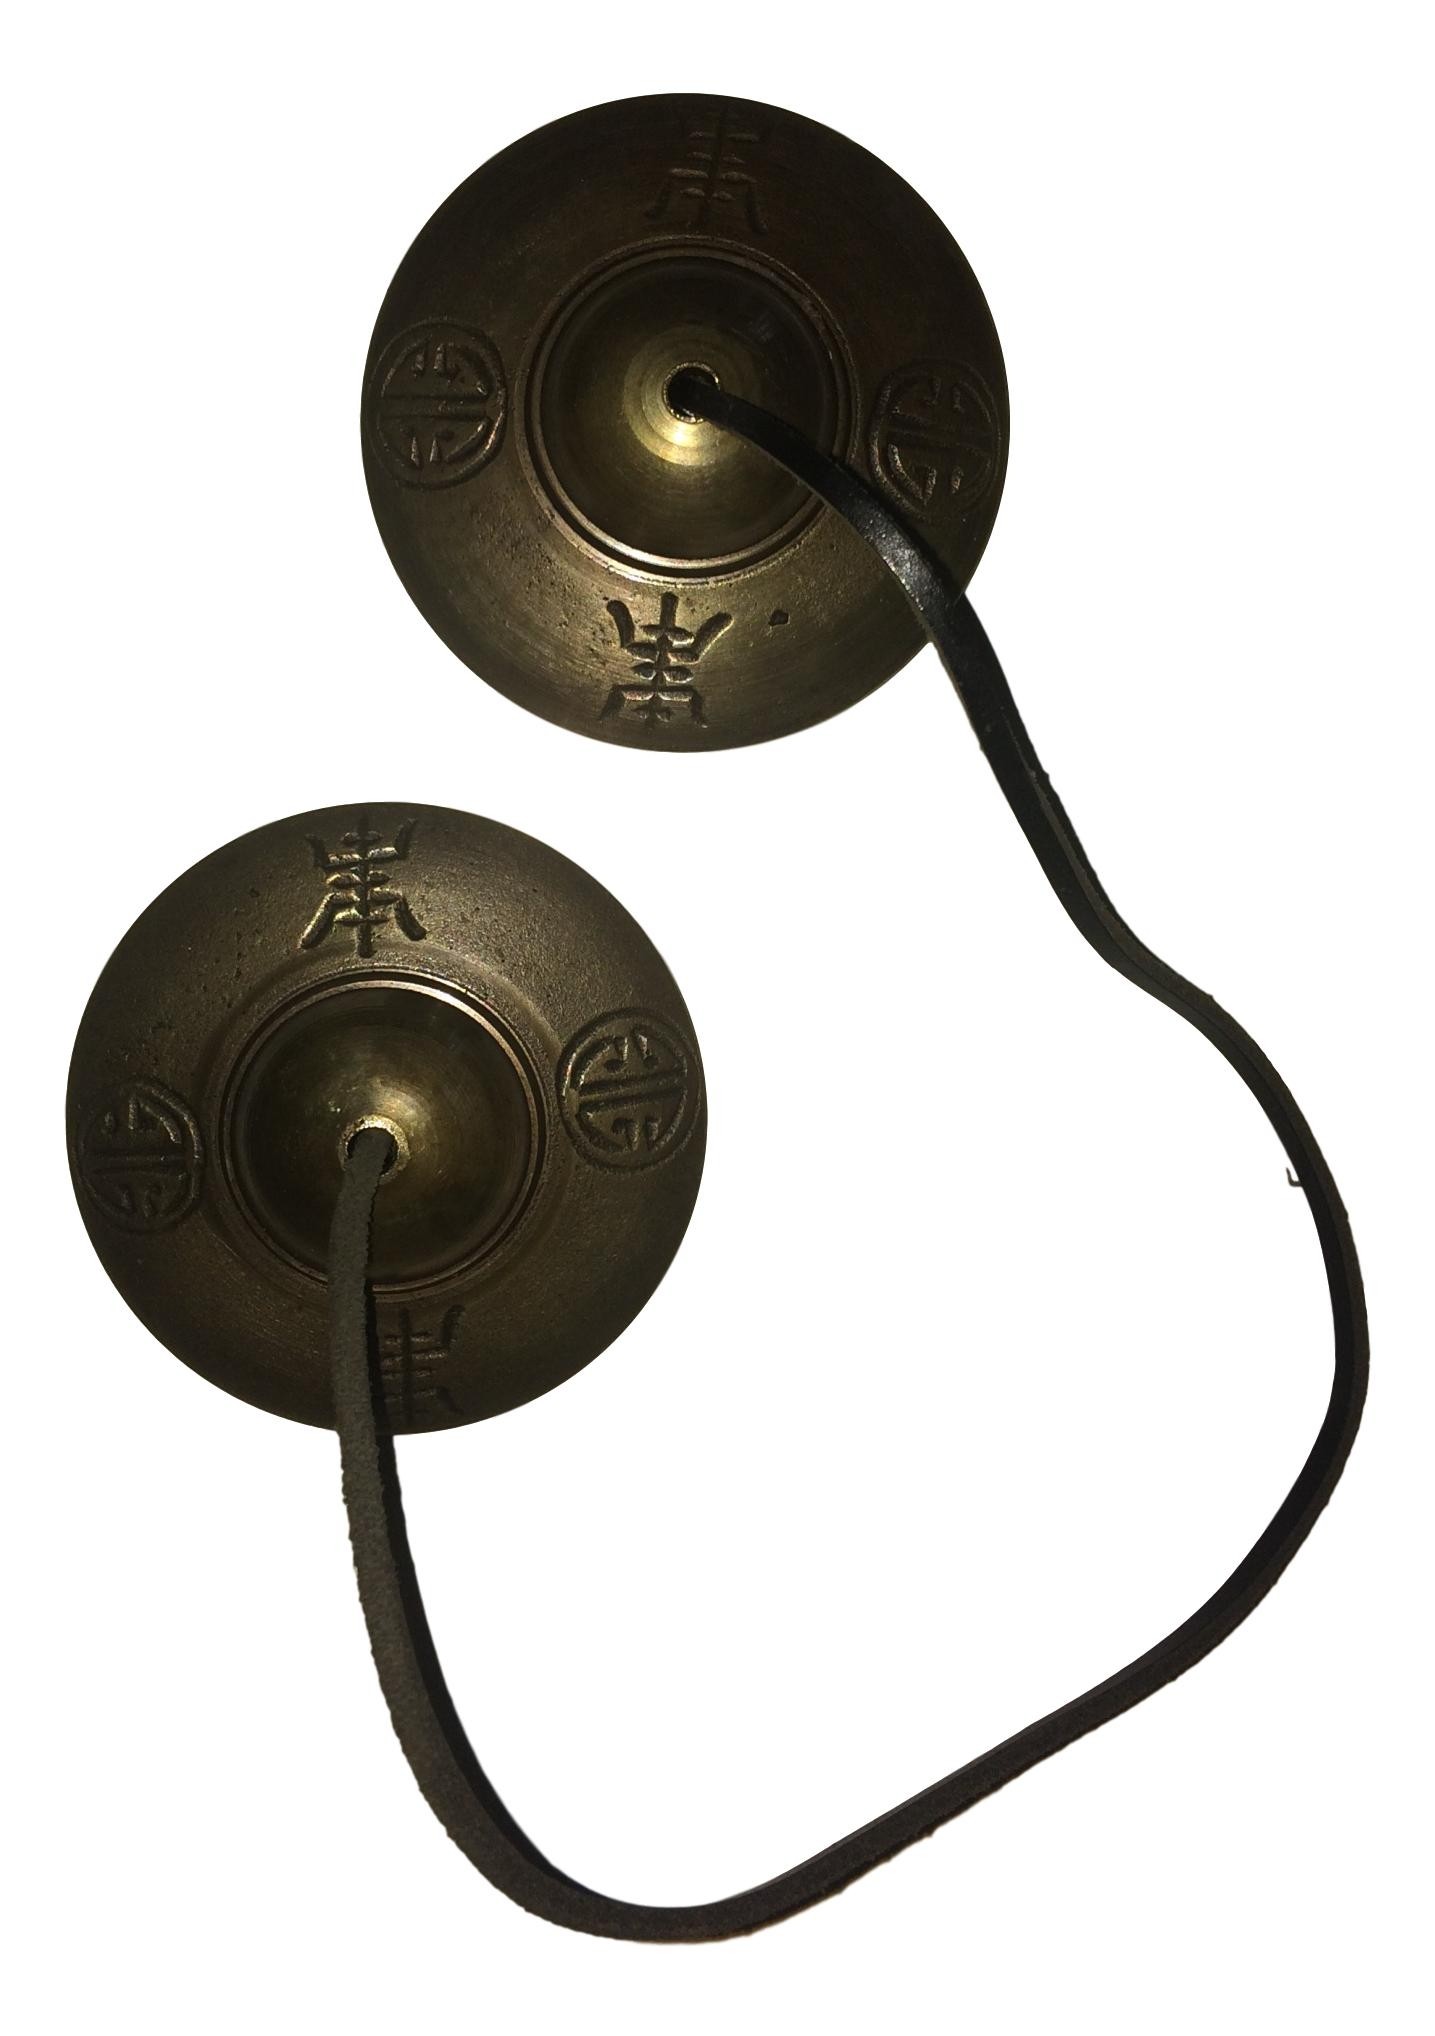 Cymbales tibétaines avec idéogrammes